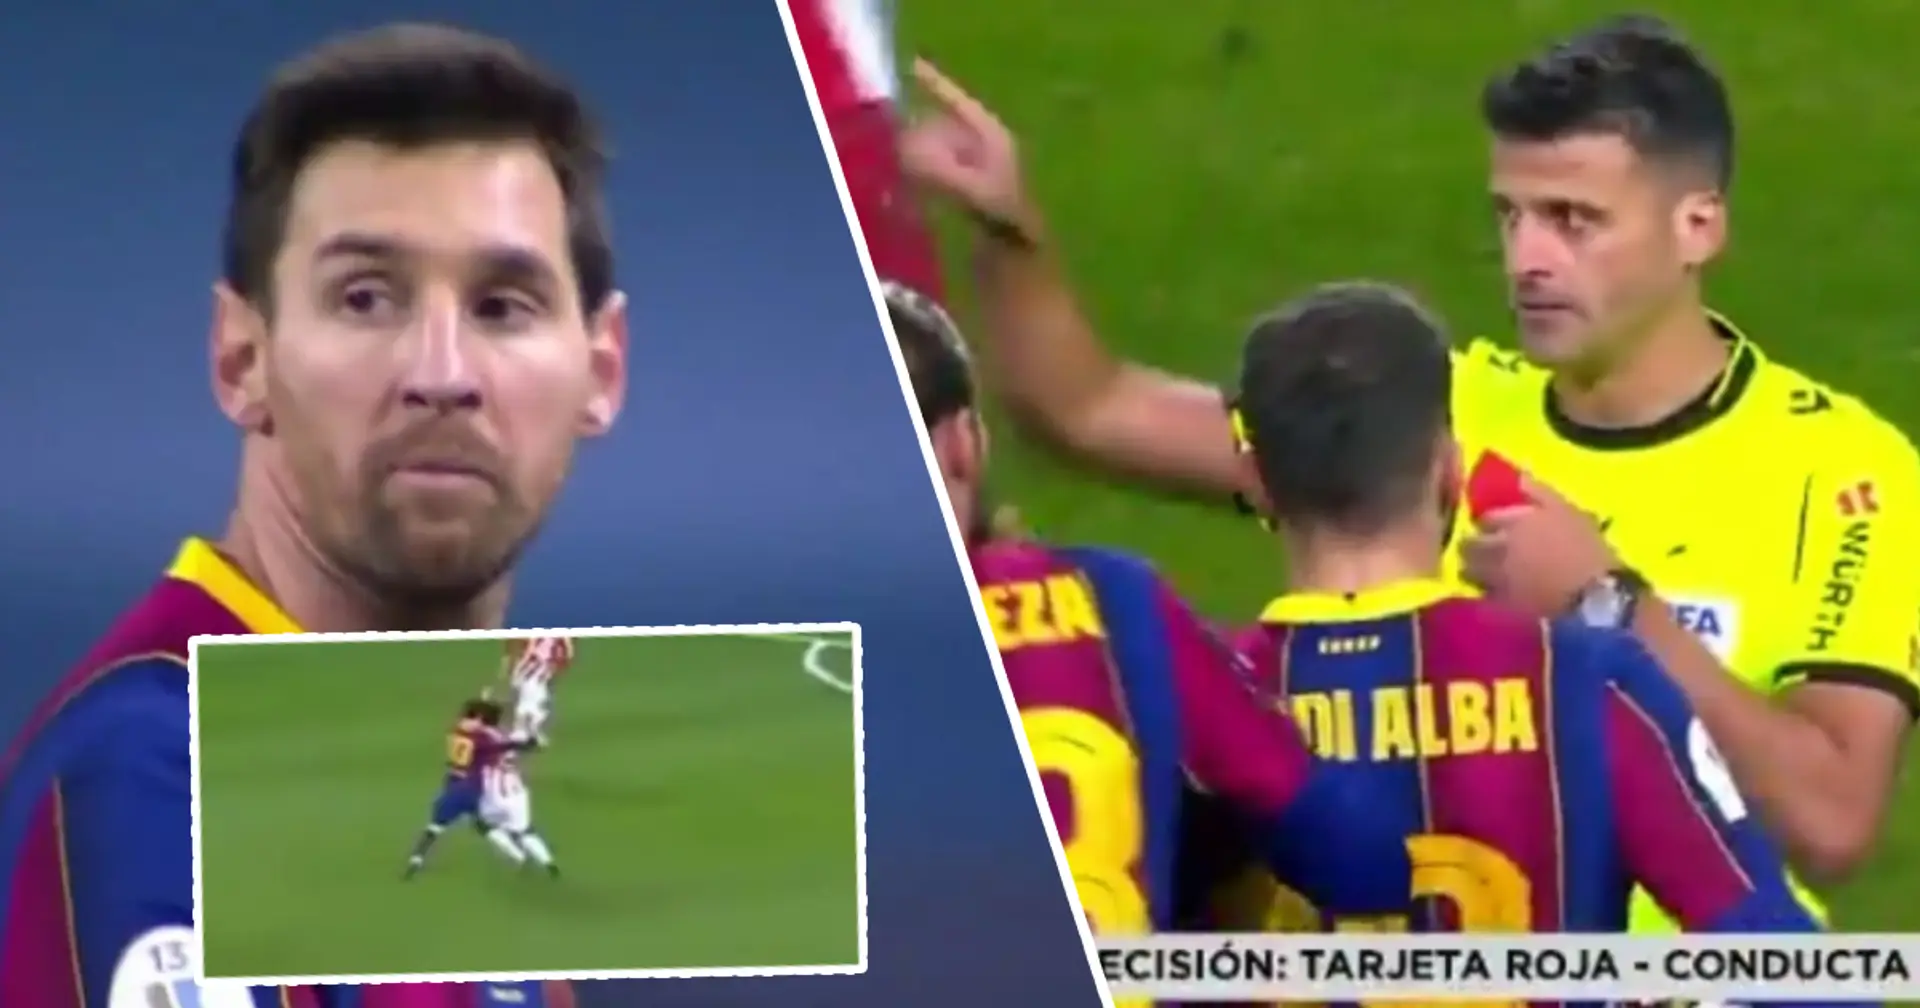 Leo Messi expulsado por primera vez con el Barça, ya que golpeó desagradablemente a su rival por frustración